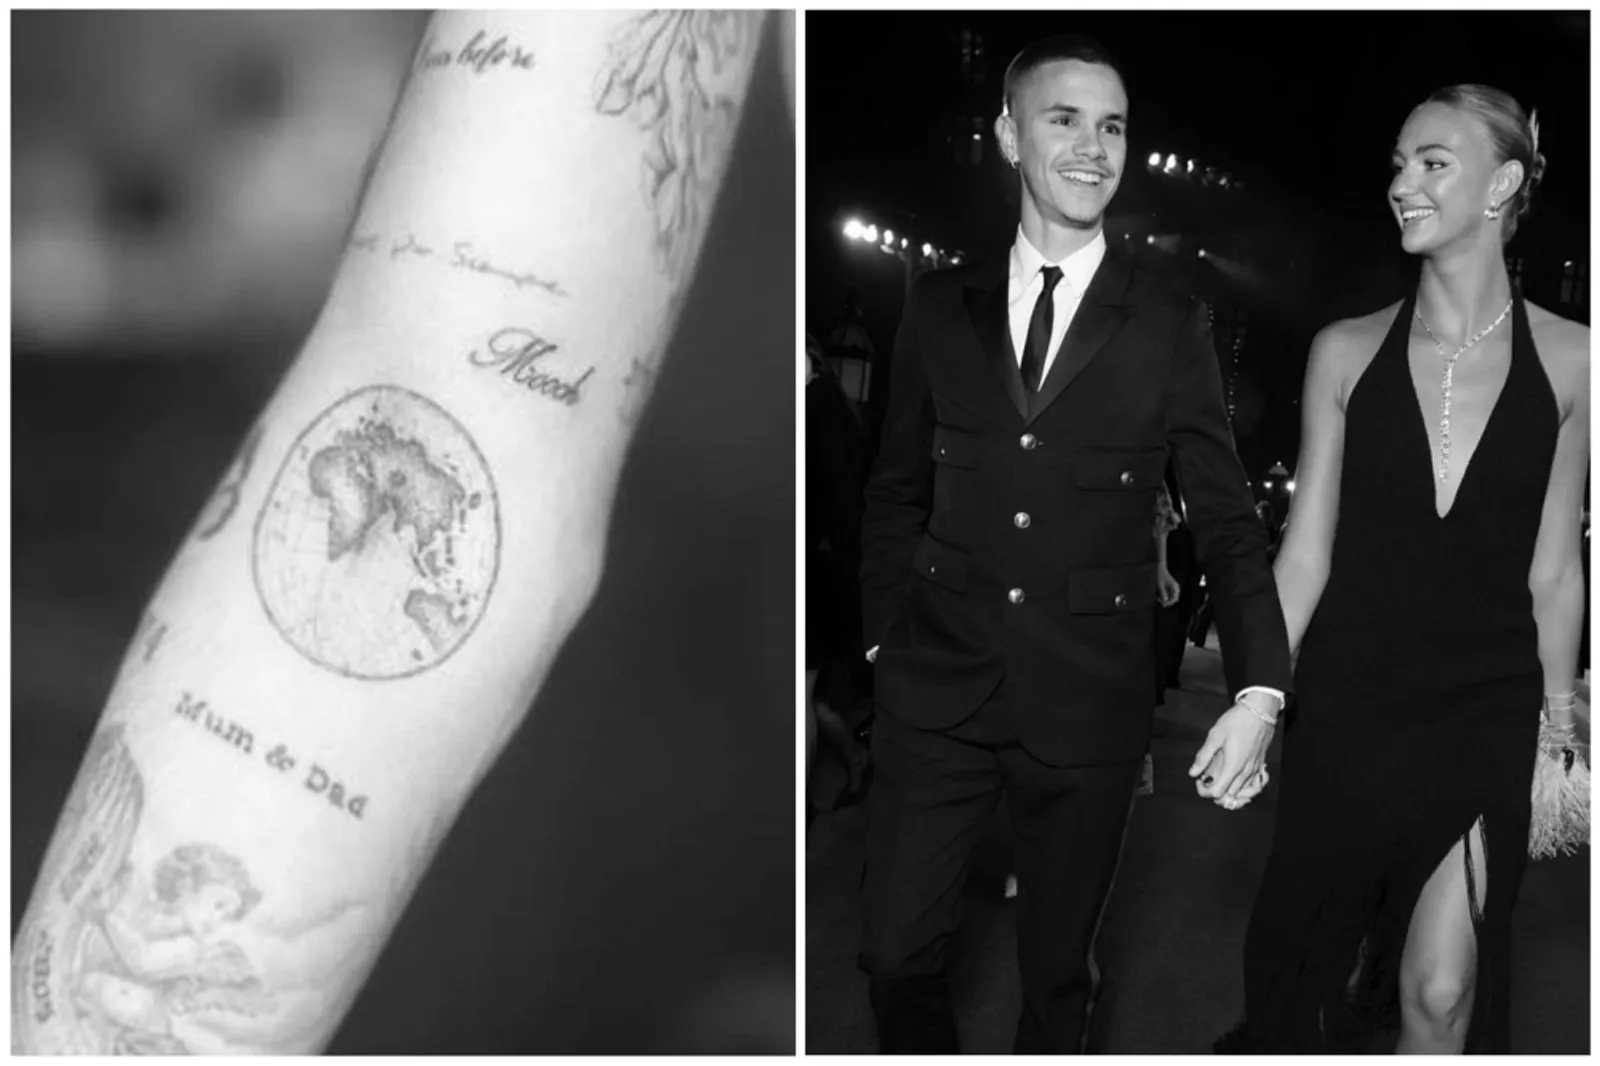 Kisah Cinta Romeo Beckham dan Mia Regan, Putus Setelah 5 Tahun Pacaran